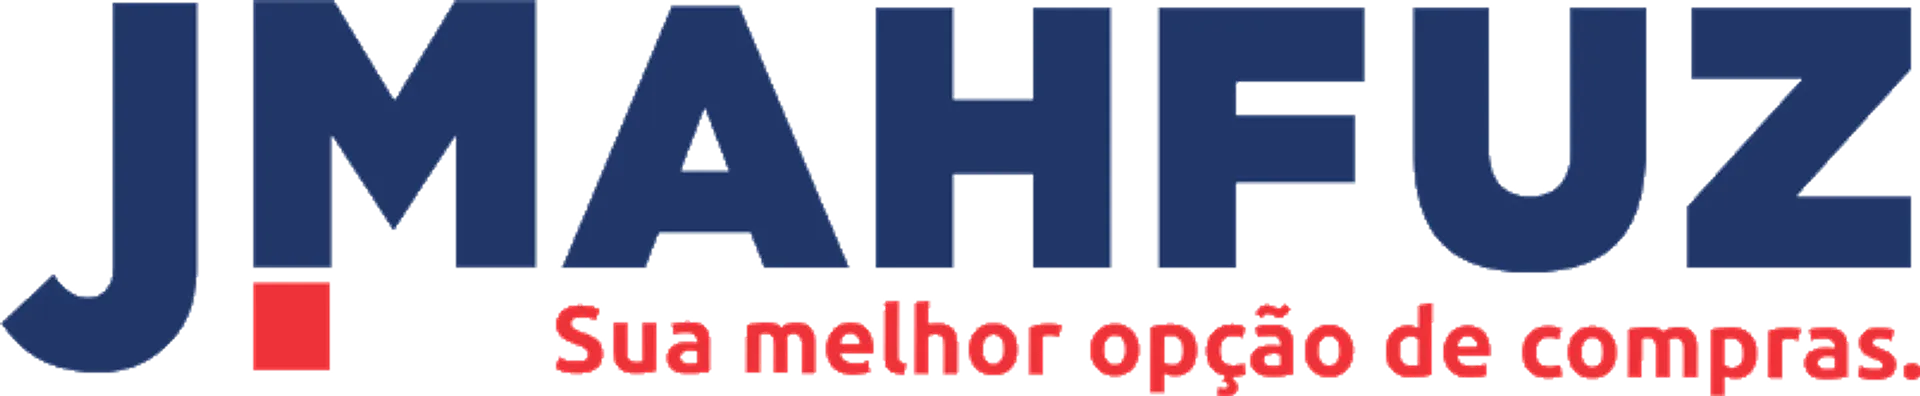 J. MAHFUZ logo